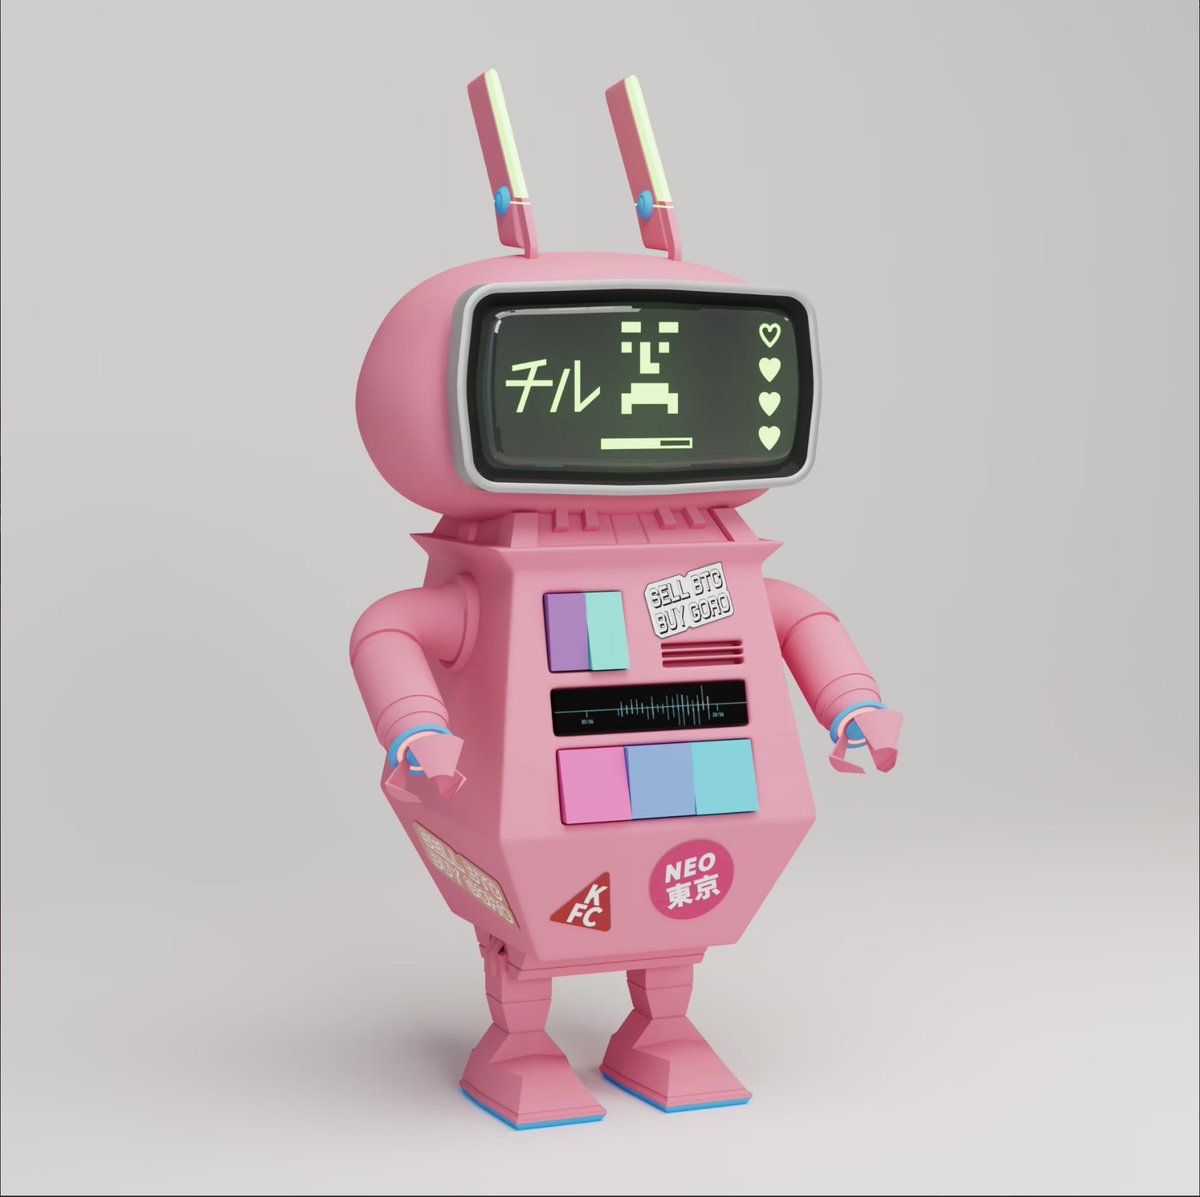 全身ピンクのチルGORO Bot最高に気に入ってます😆🔥

#GoroBots #MintGoroBots